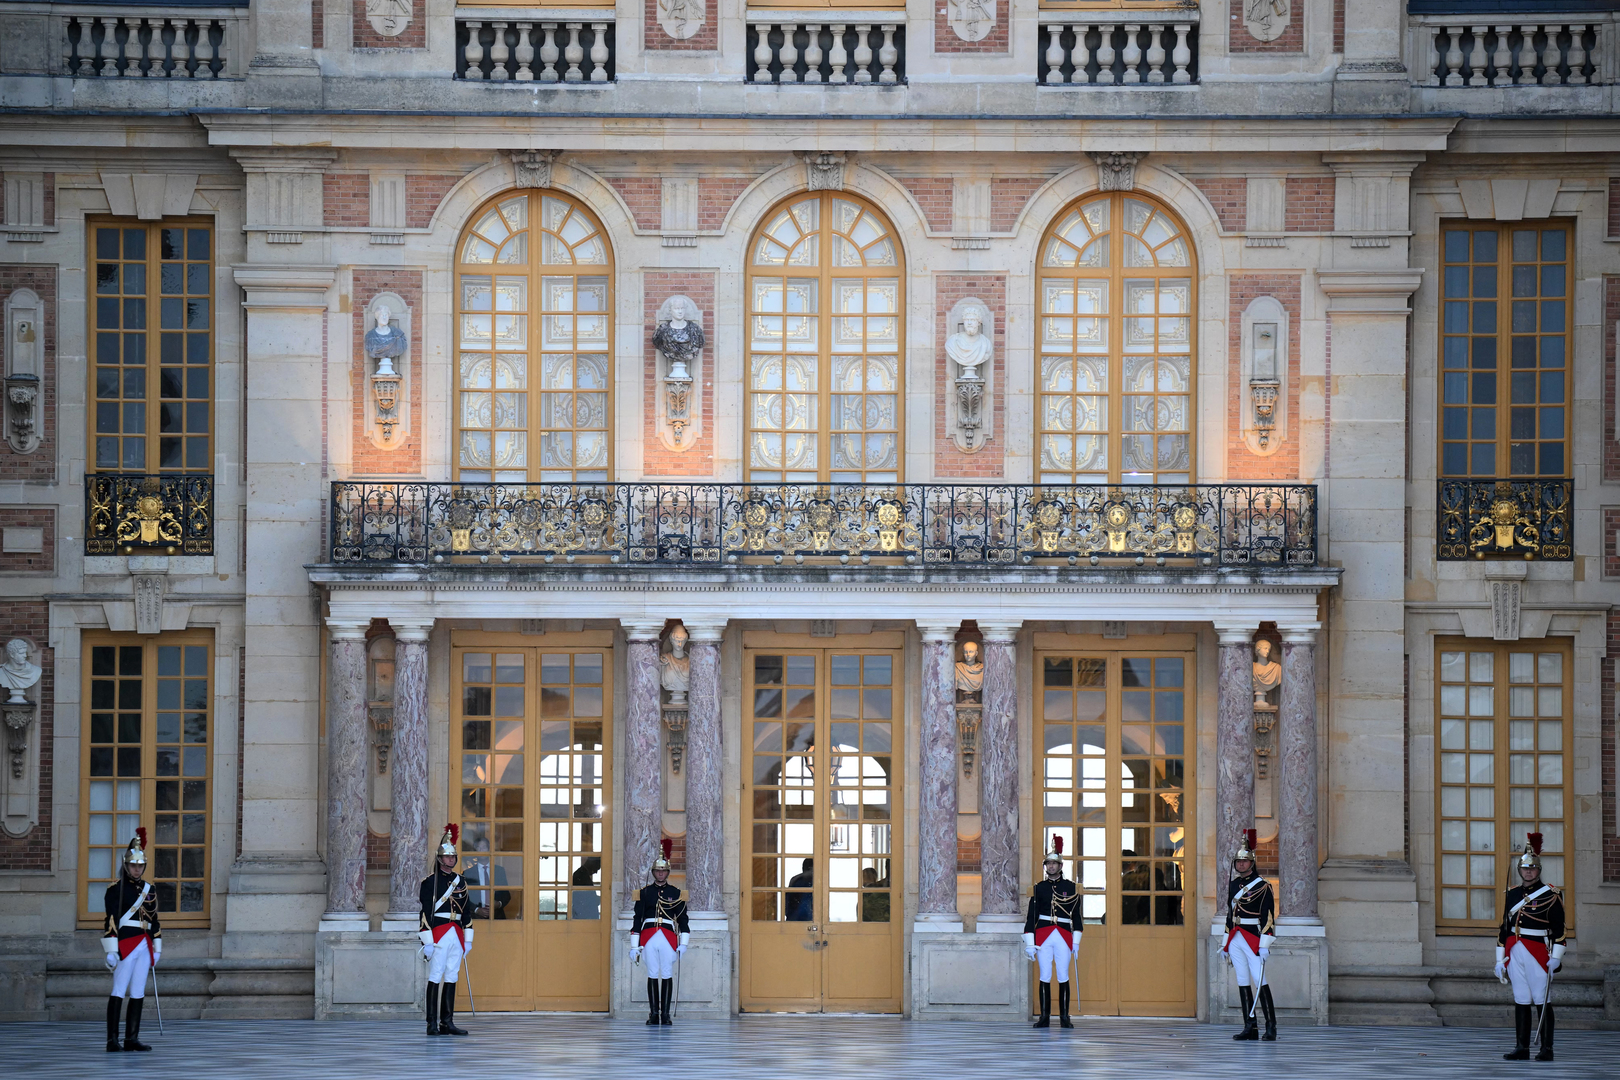 إخلاء قصر فرساي في فرنسا بسبب إنذار